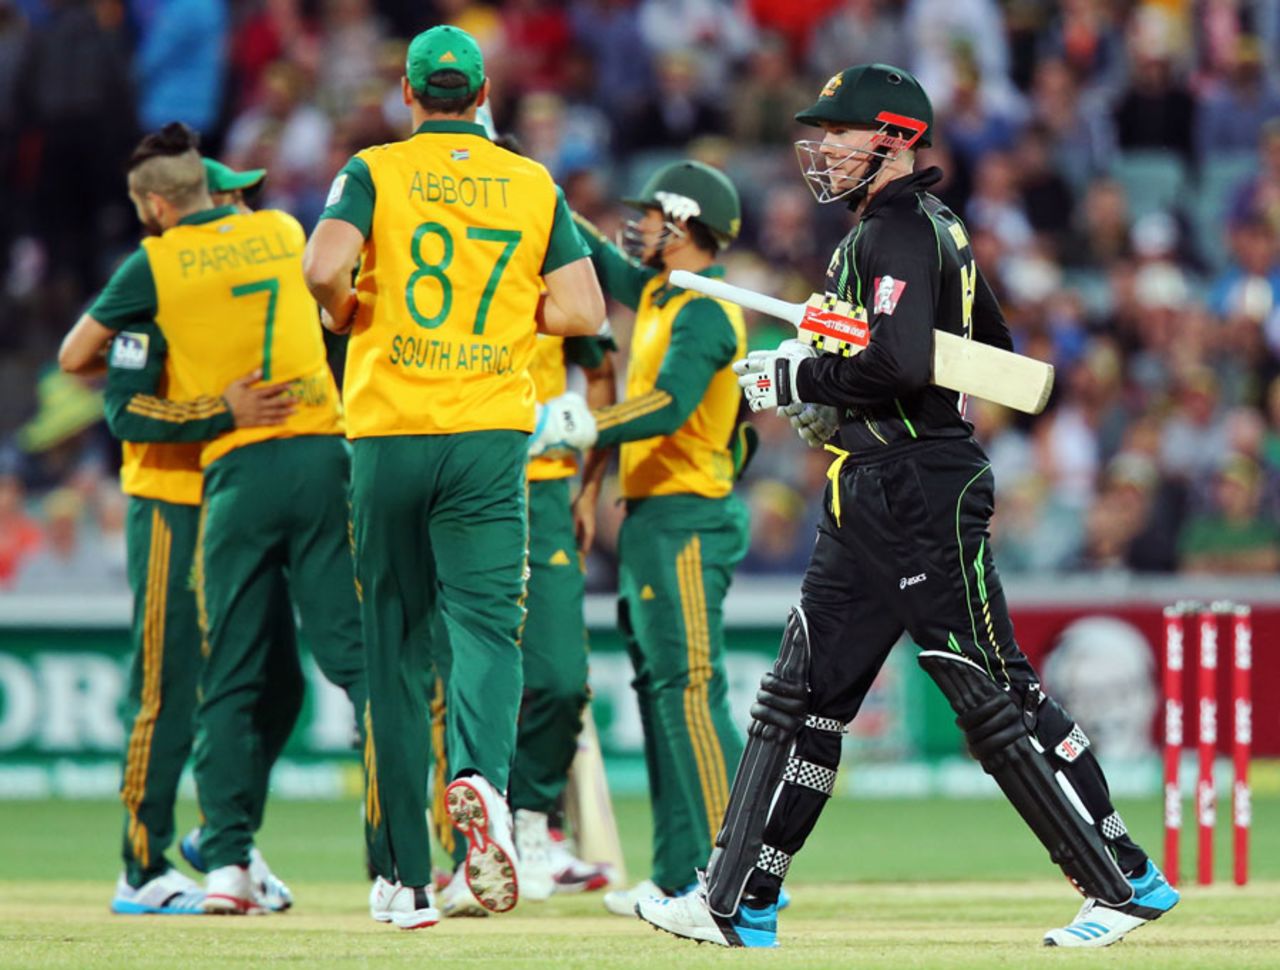 Ben Dunk fell for 2 on his international debut, Australia v South Africa, 1st Twenty20, Adelaide, November 5, 2014